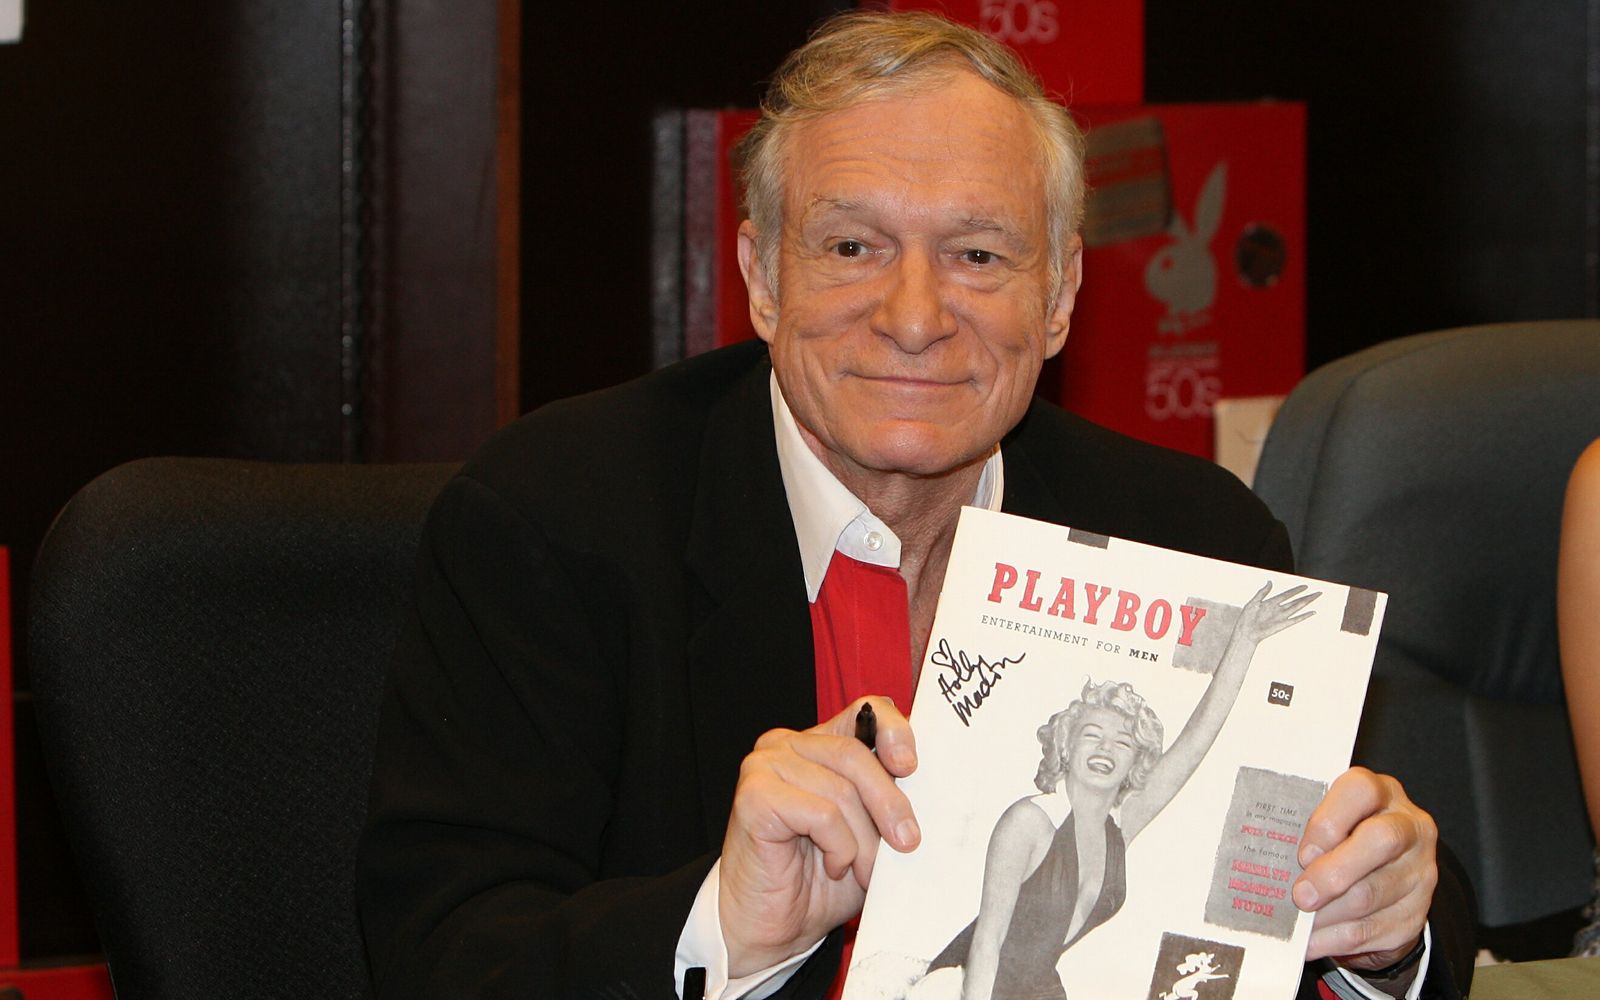 Х’ю Хефнер помер у віці 91 року в резиденції Playboy